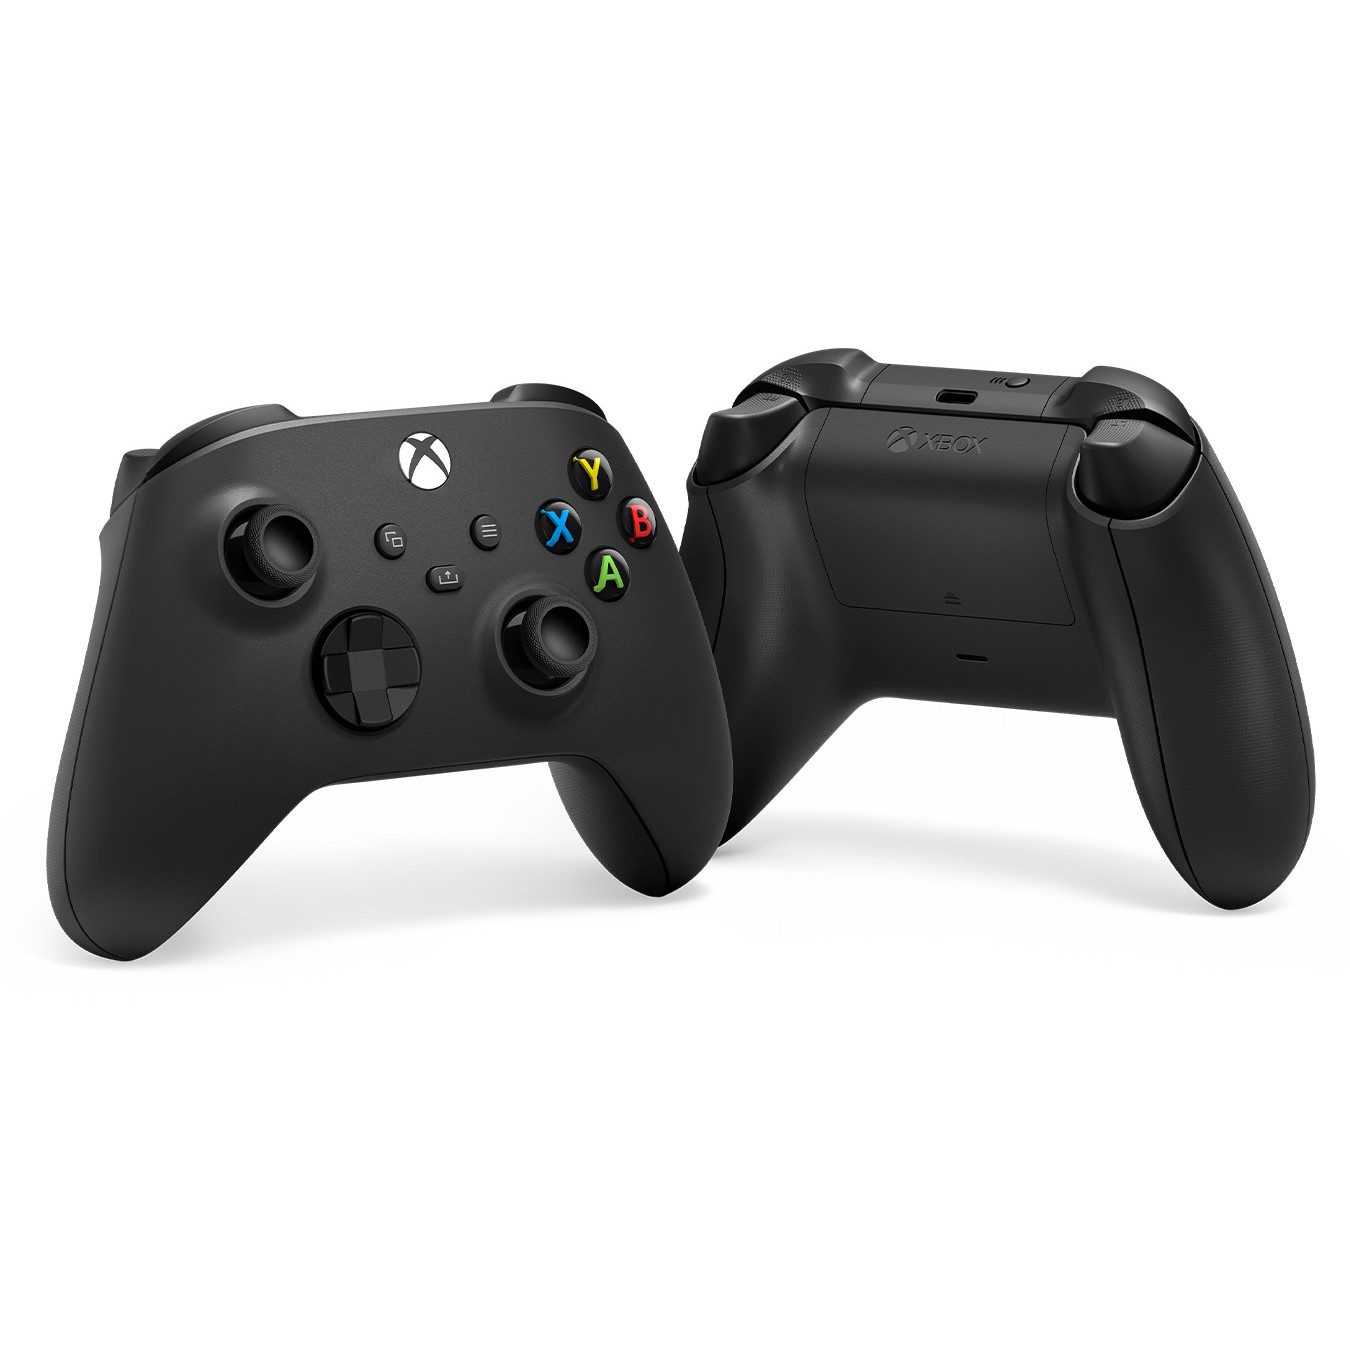 MICROSOFT Wireless Controller Gamepad PC Xbox Series X Xbox One Xbox One S Xbox One X Black